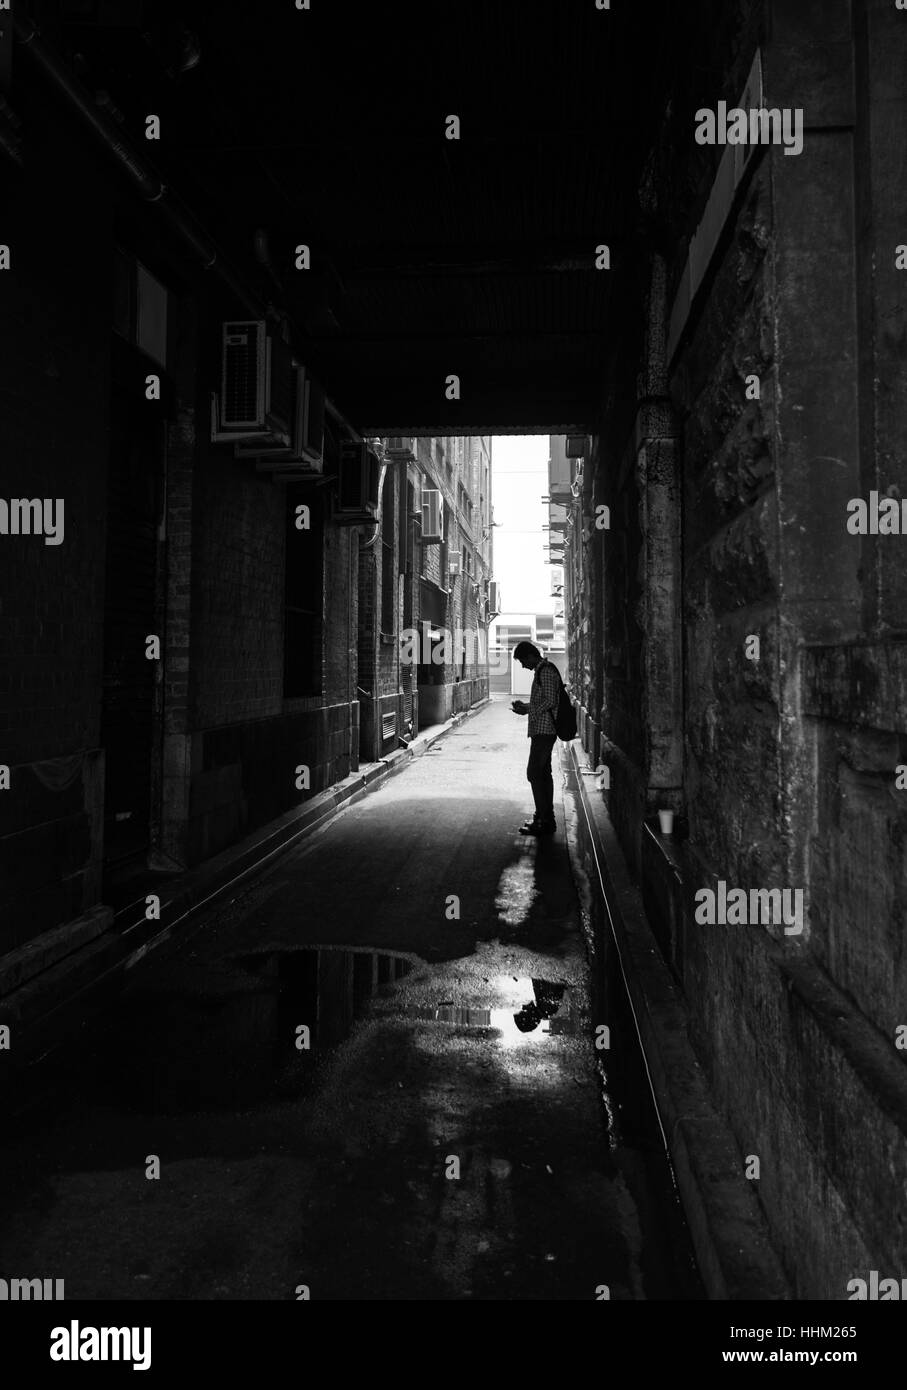 L'homme sur son téléphone dans une ruelle du CBD de Melbourne, Victoria Australie Banque D'Images